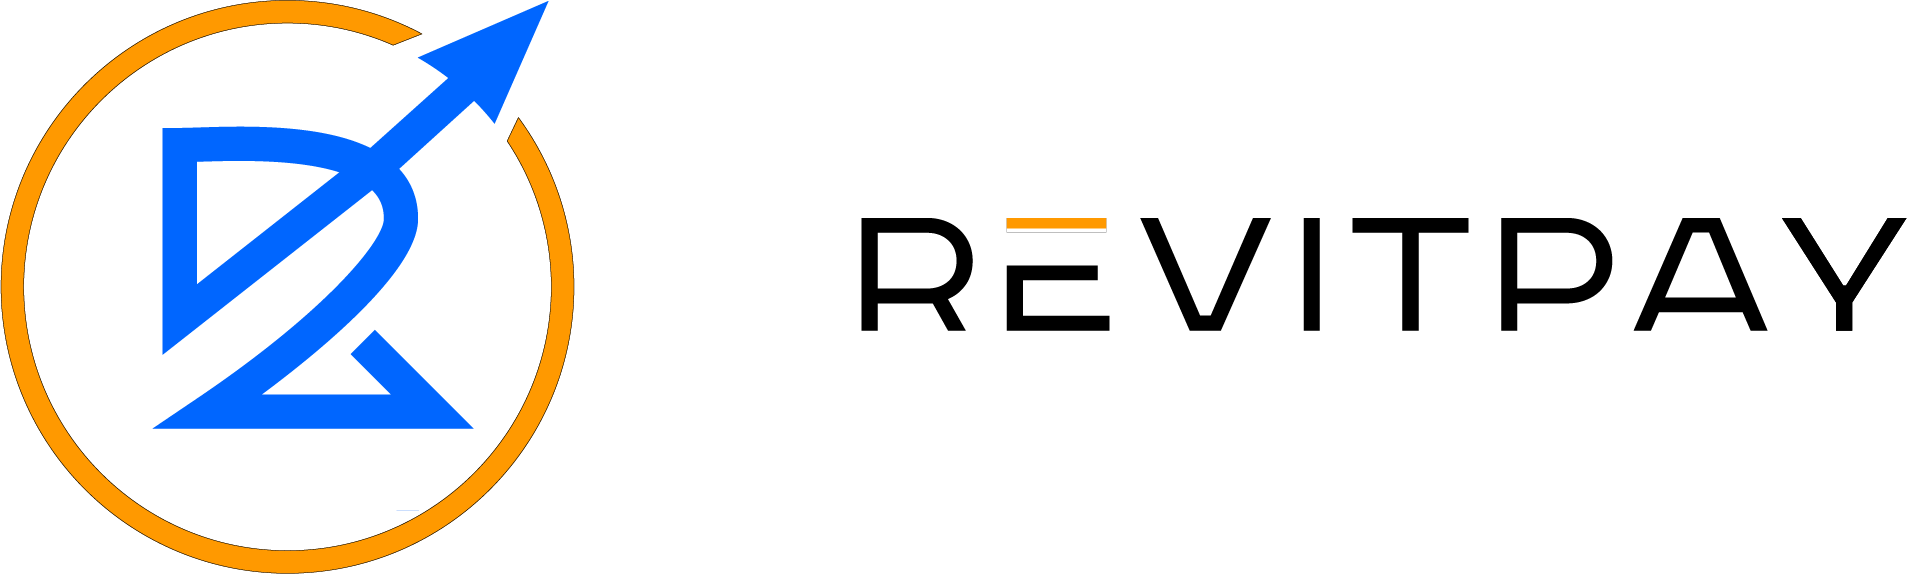 revitpay-logo